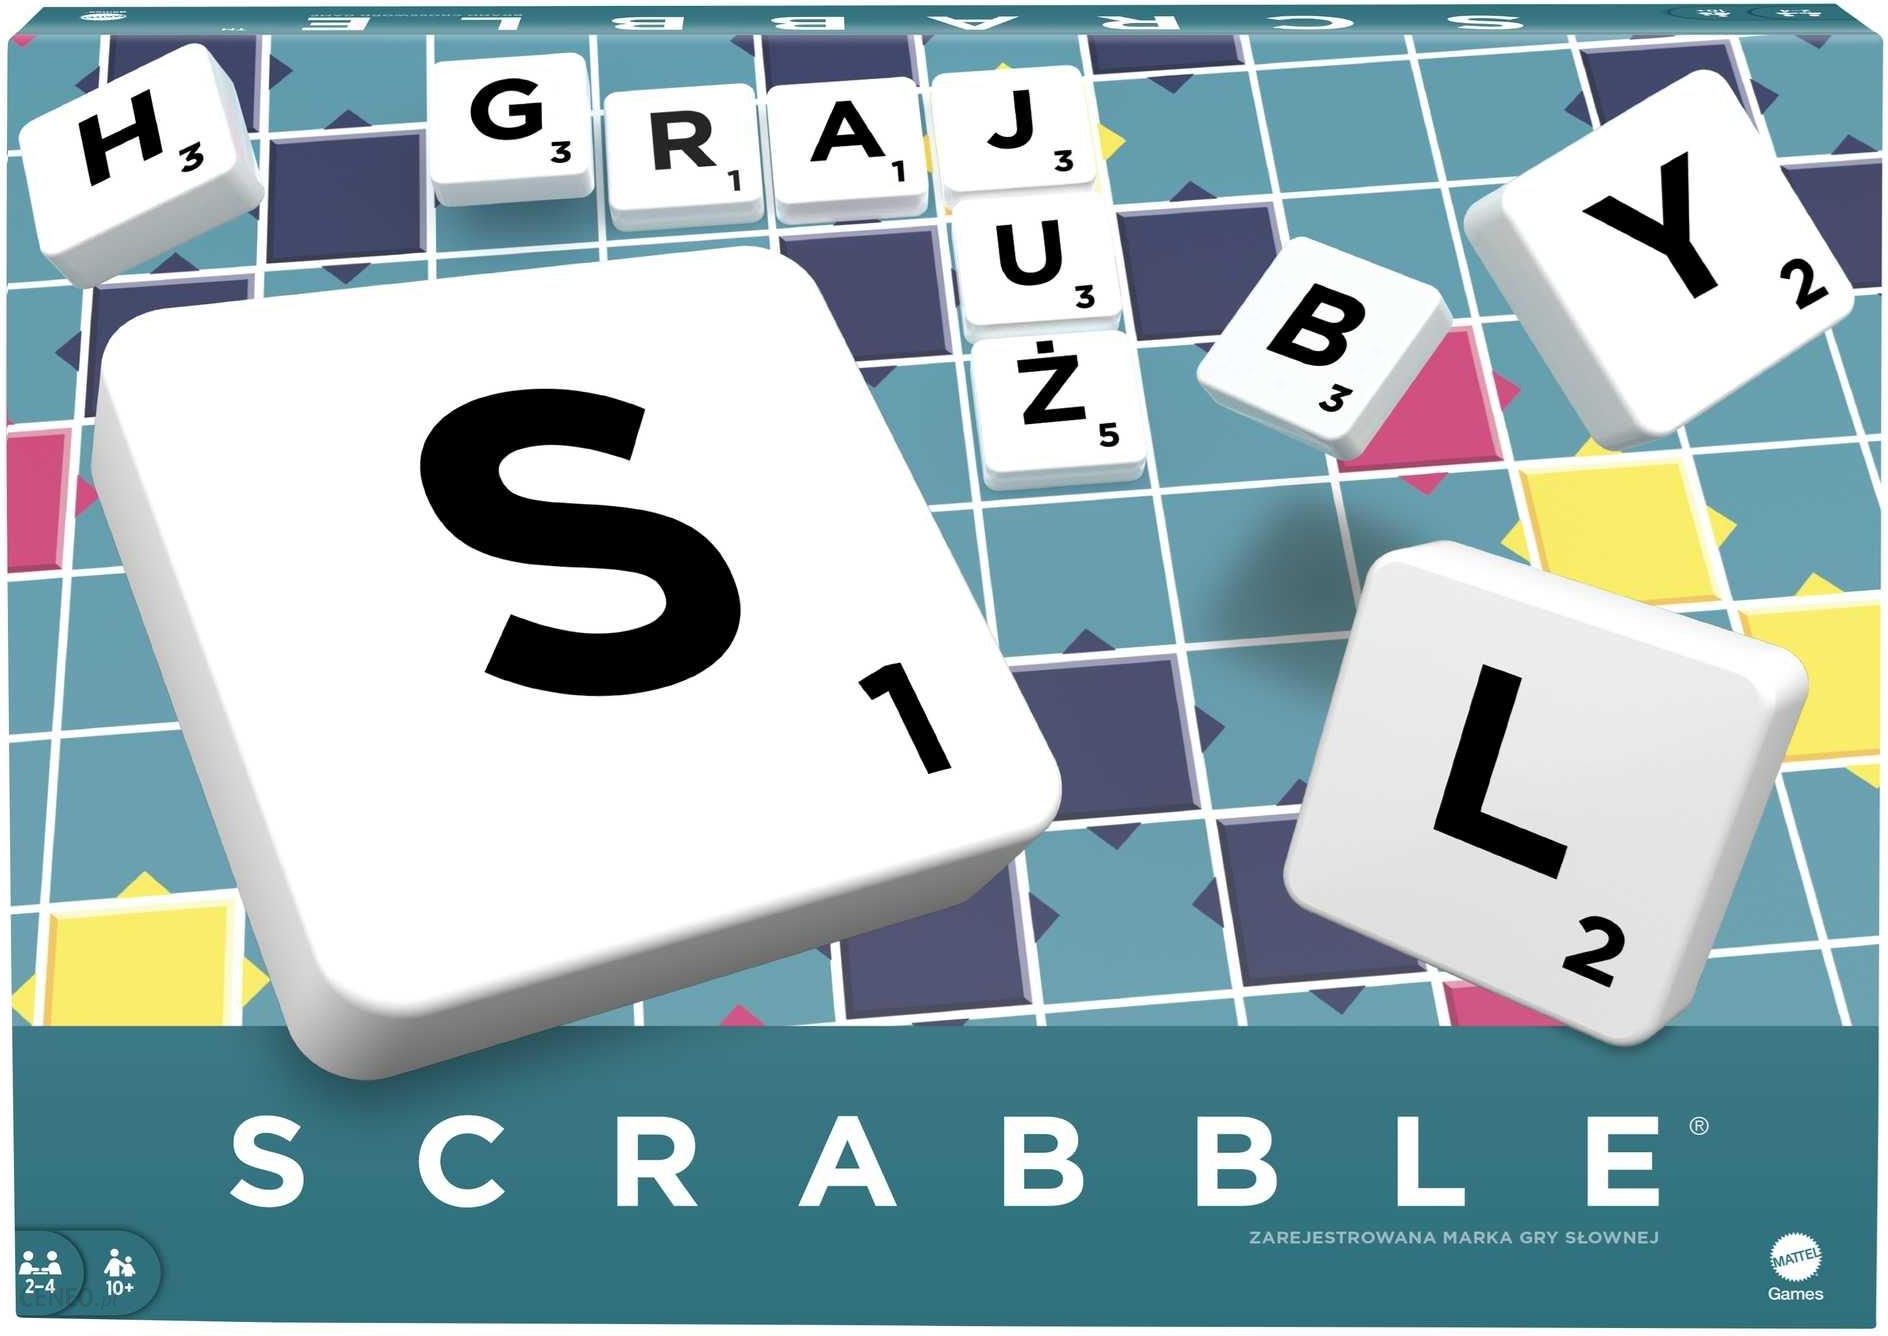 Mattel Scrabble Original Y9616